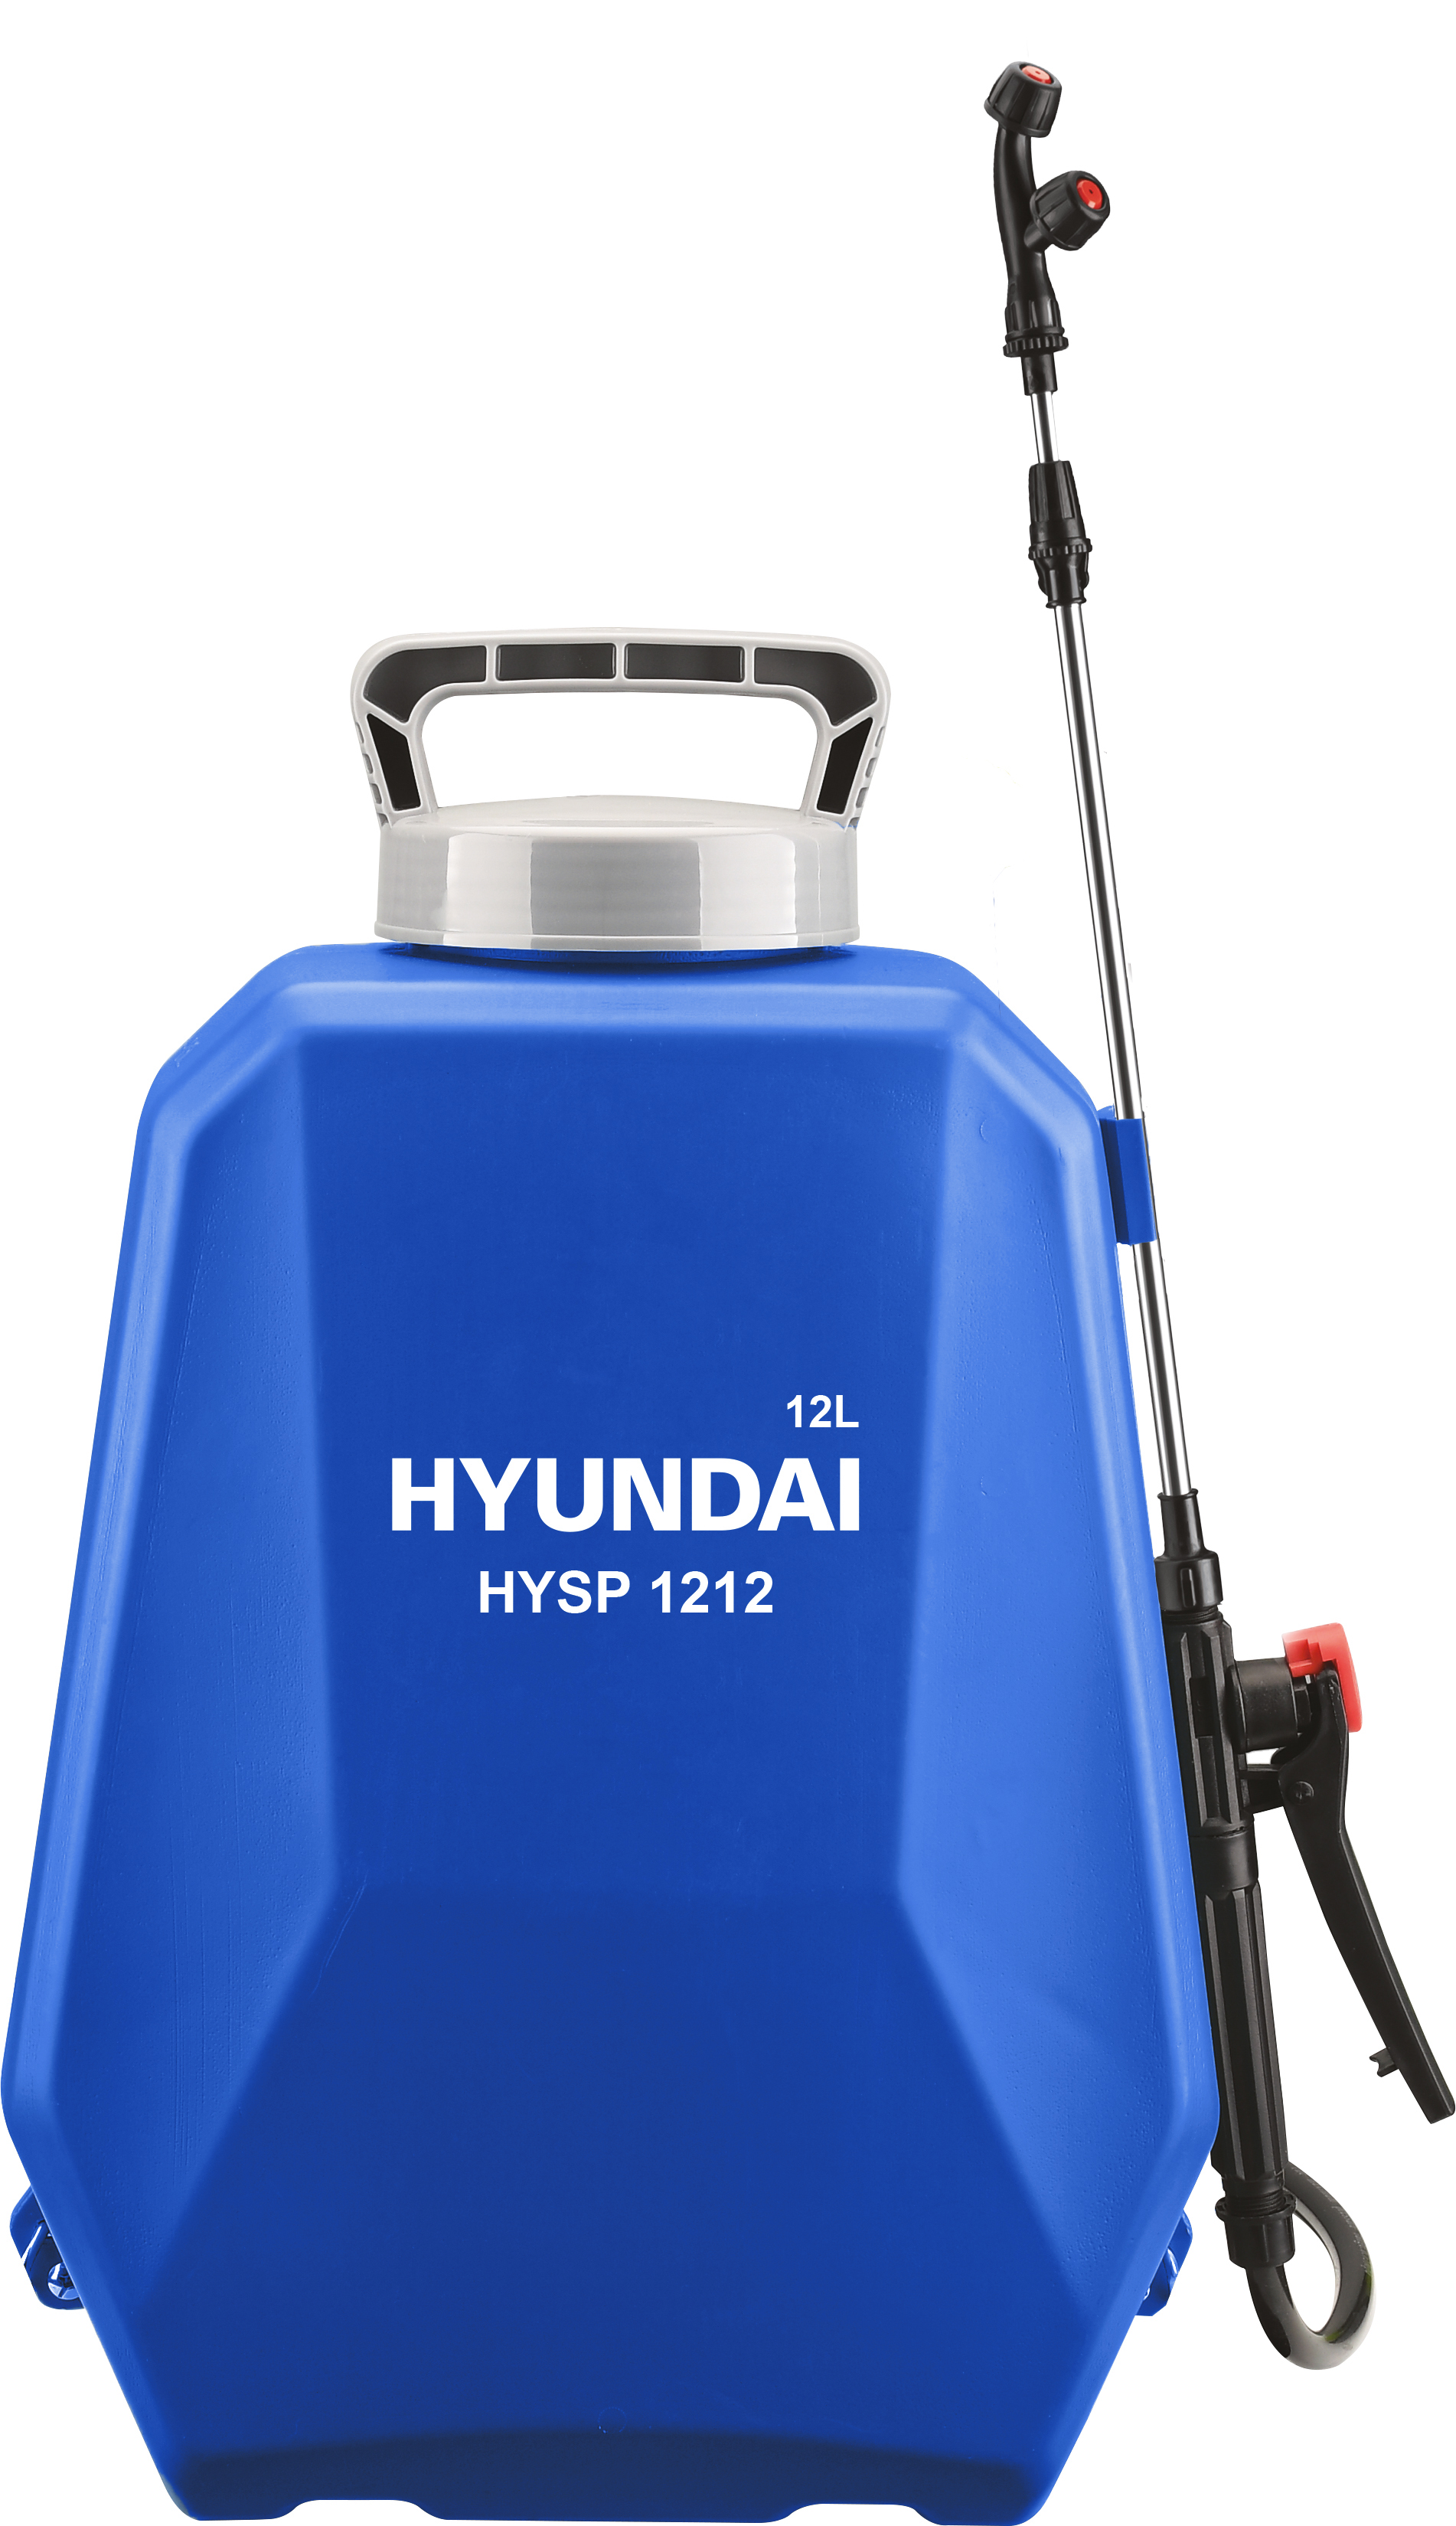 Аккумуляторный опрыскиватель Hyundai HYSP 1212 аккумуляторный опрыскиватель ryobi